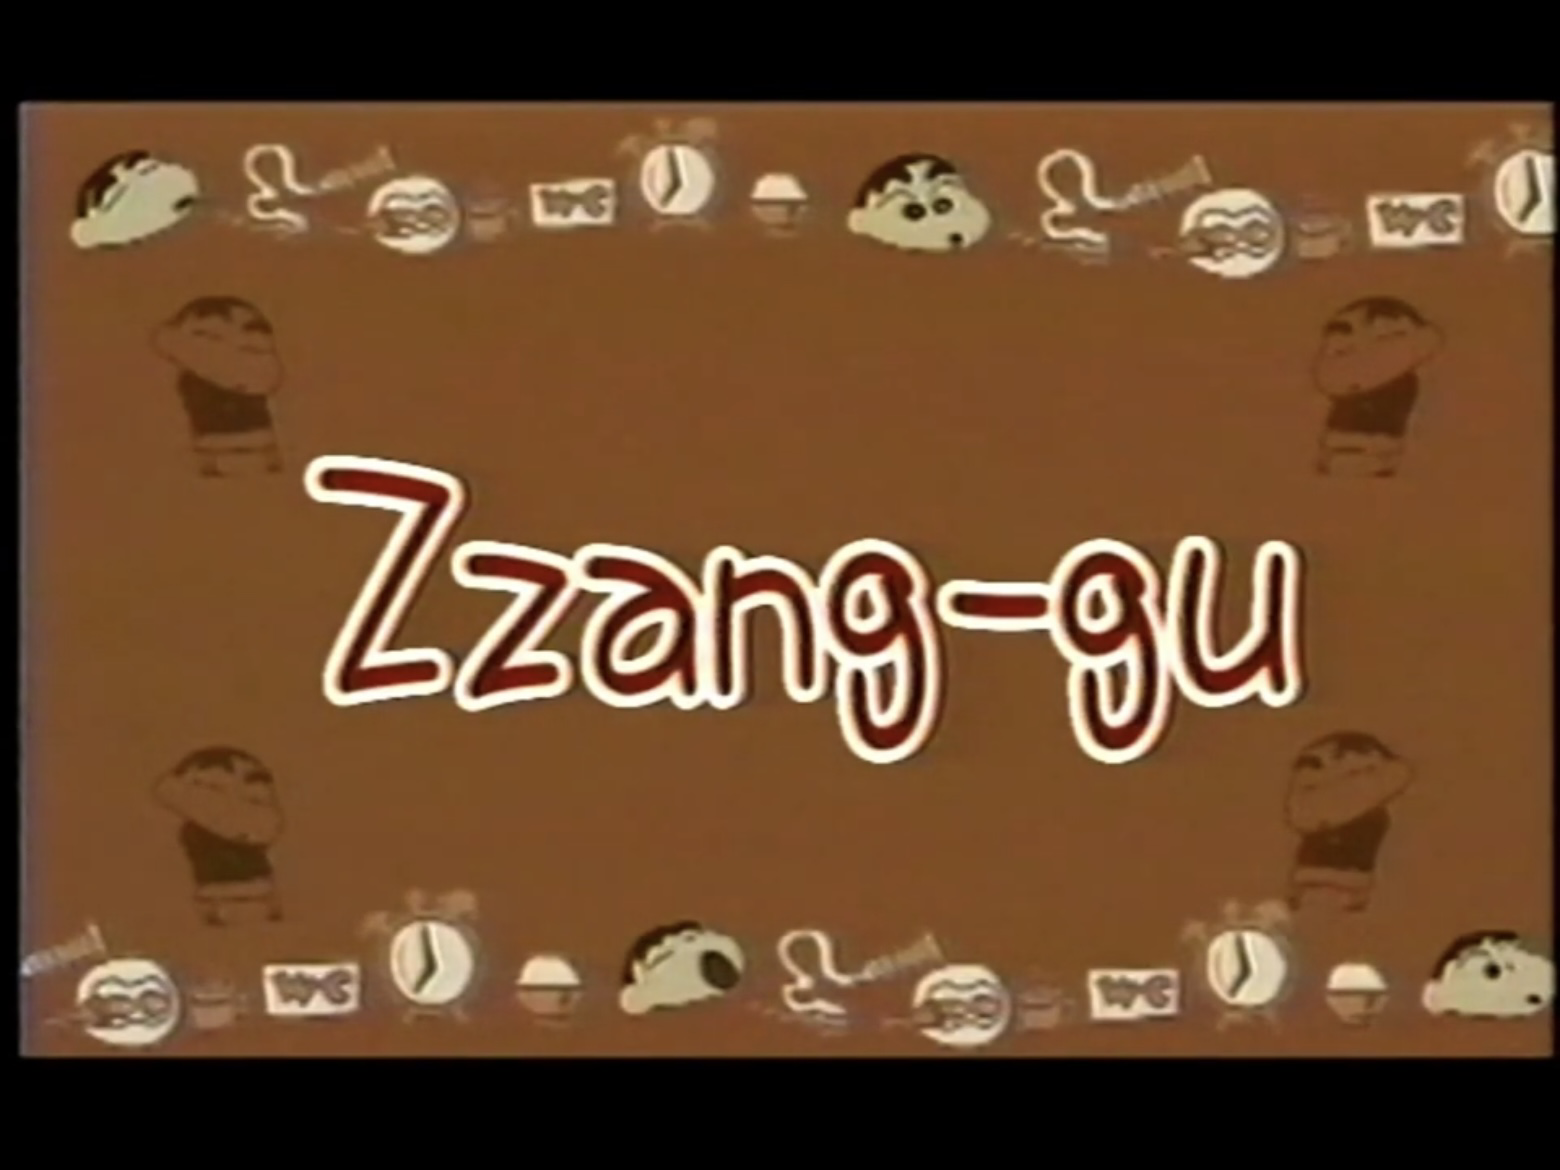 Zzang-gu.png